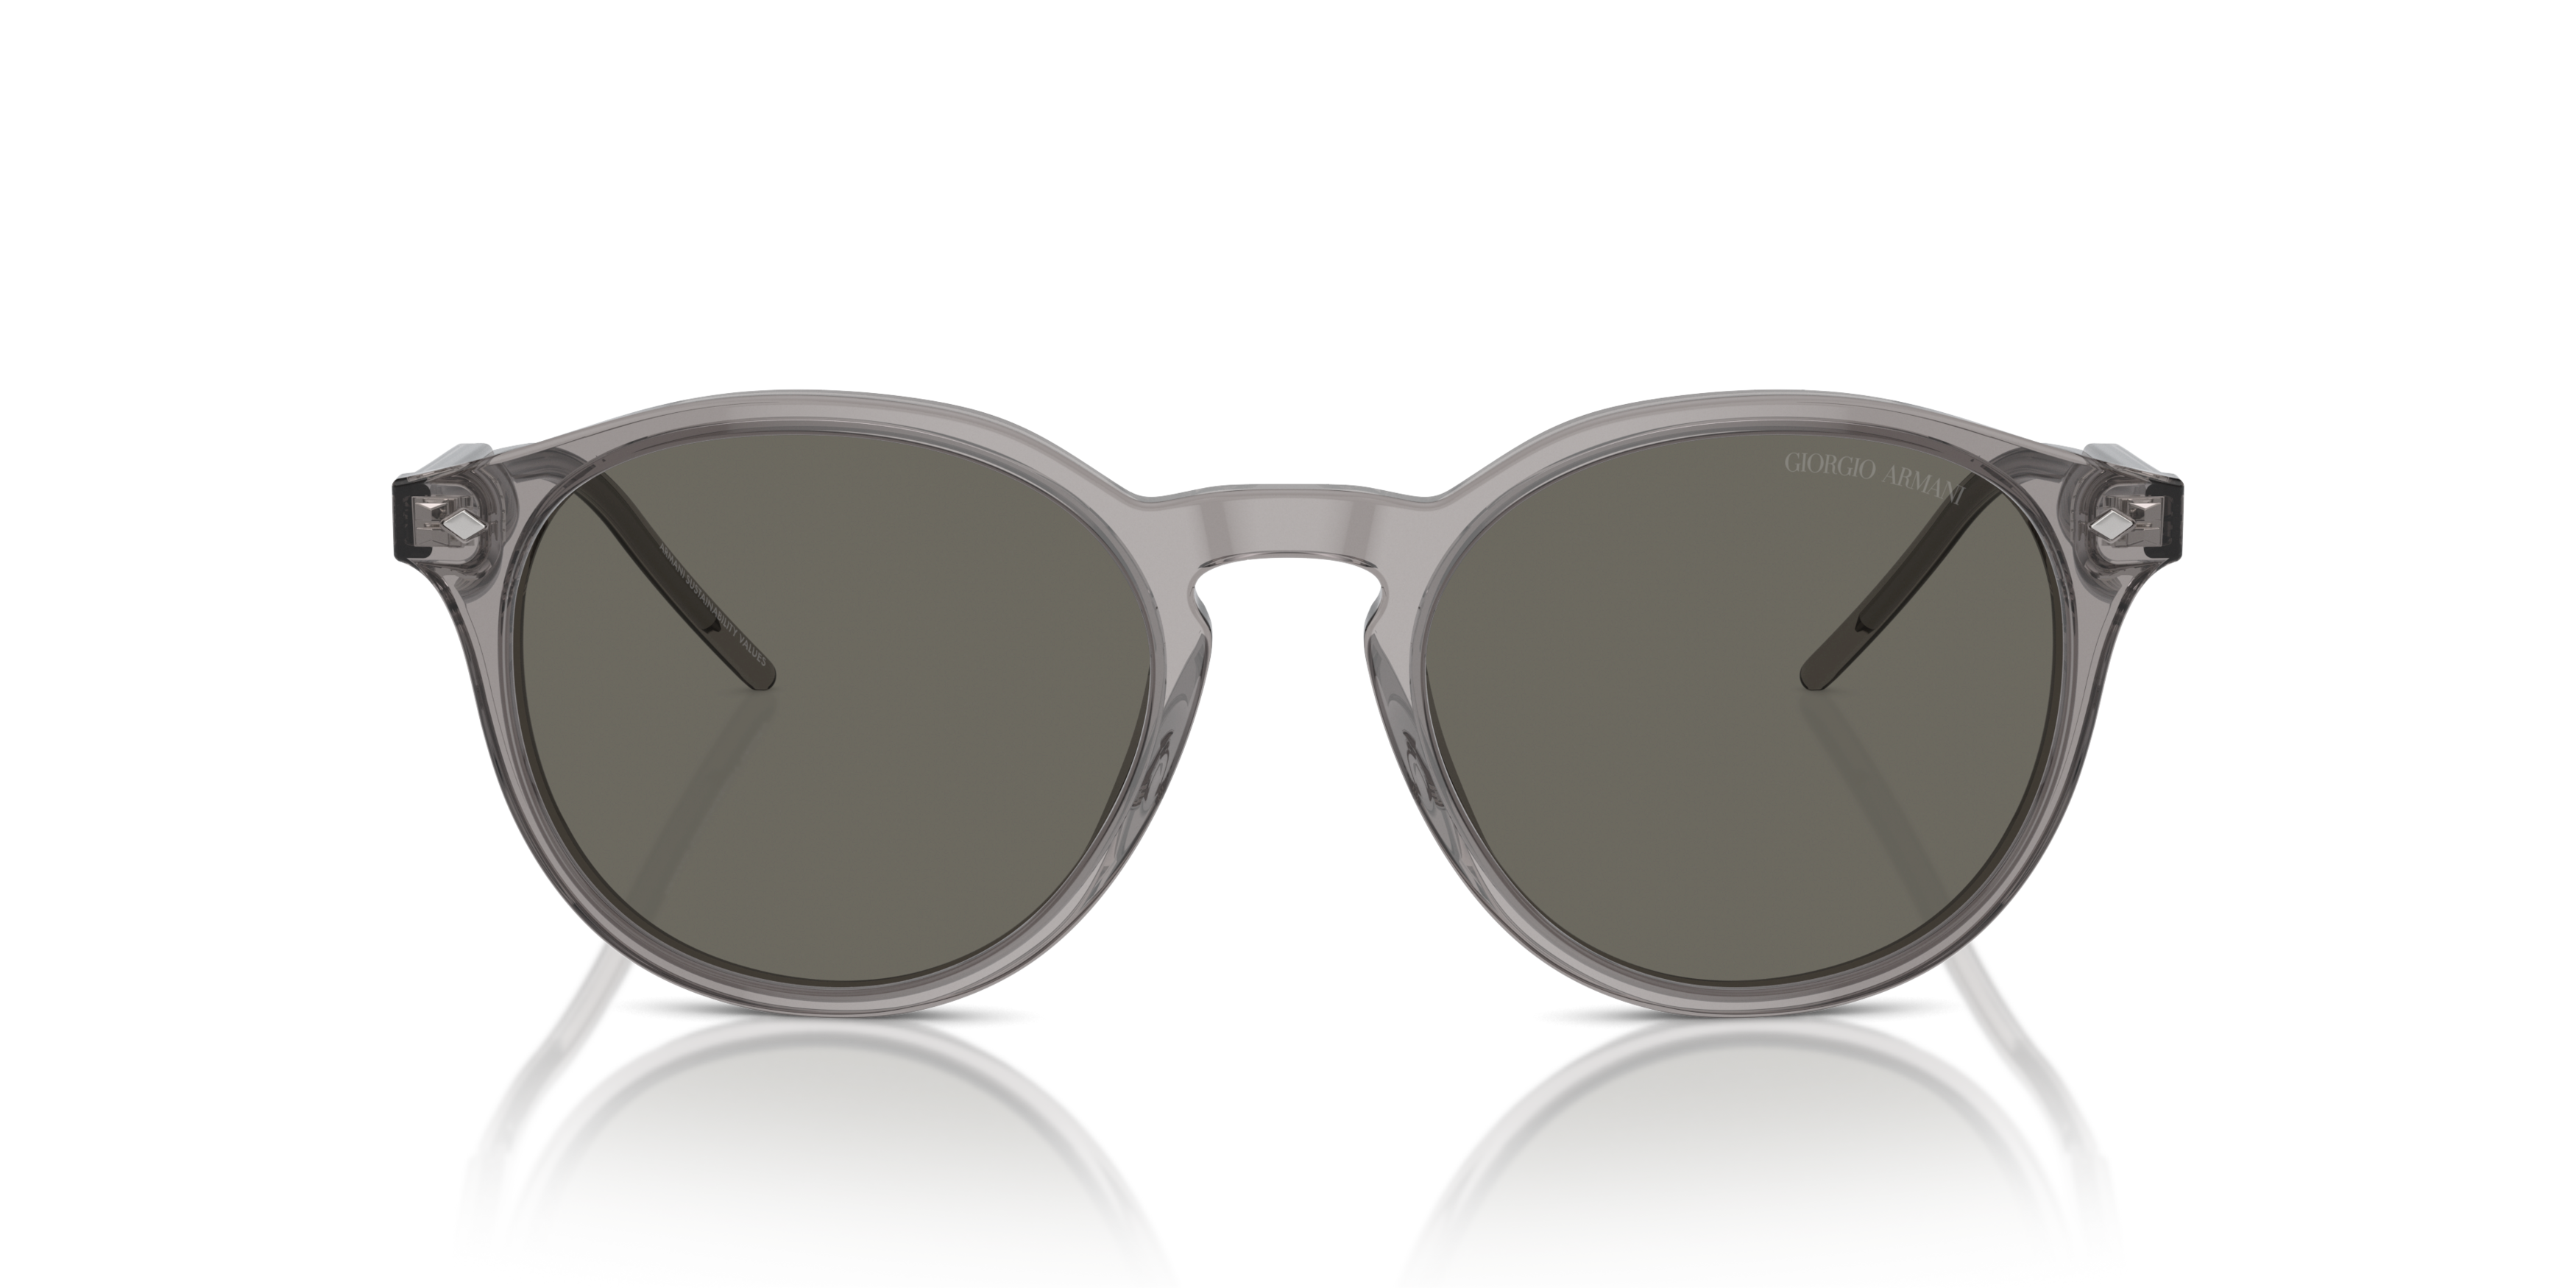 [products.image.front] Giorgio Armani AR 8211 Sunglasses